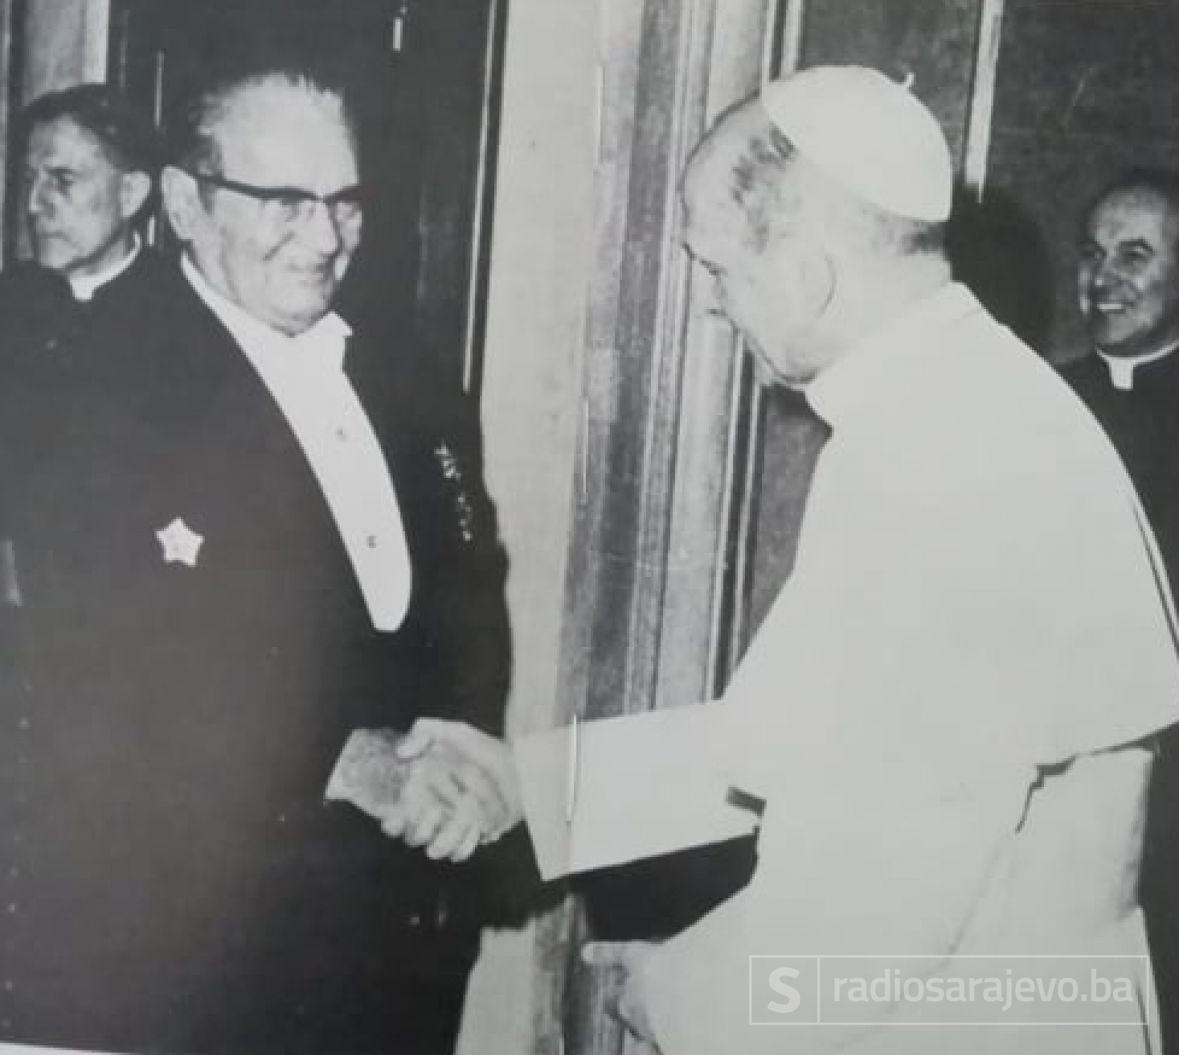 Foto: Tito ilustrovana biografija/Tito i papa Ivan Pavao II, Vatikan 1971.